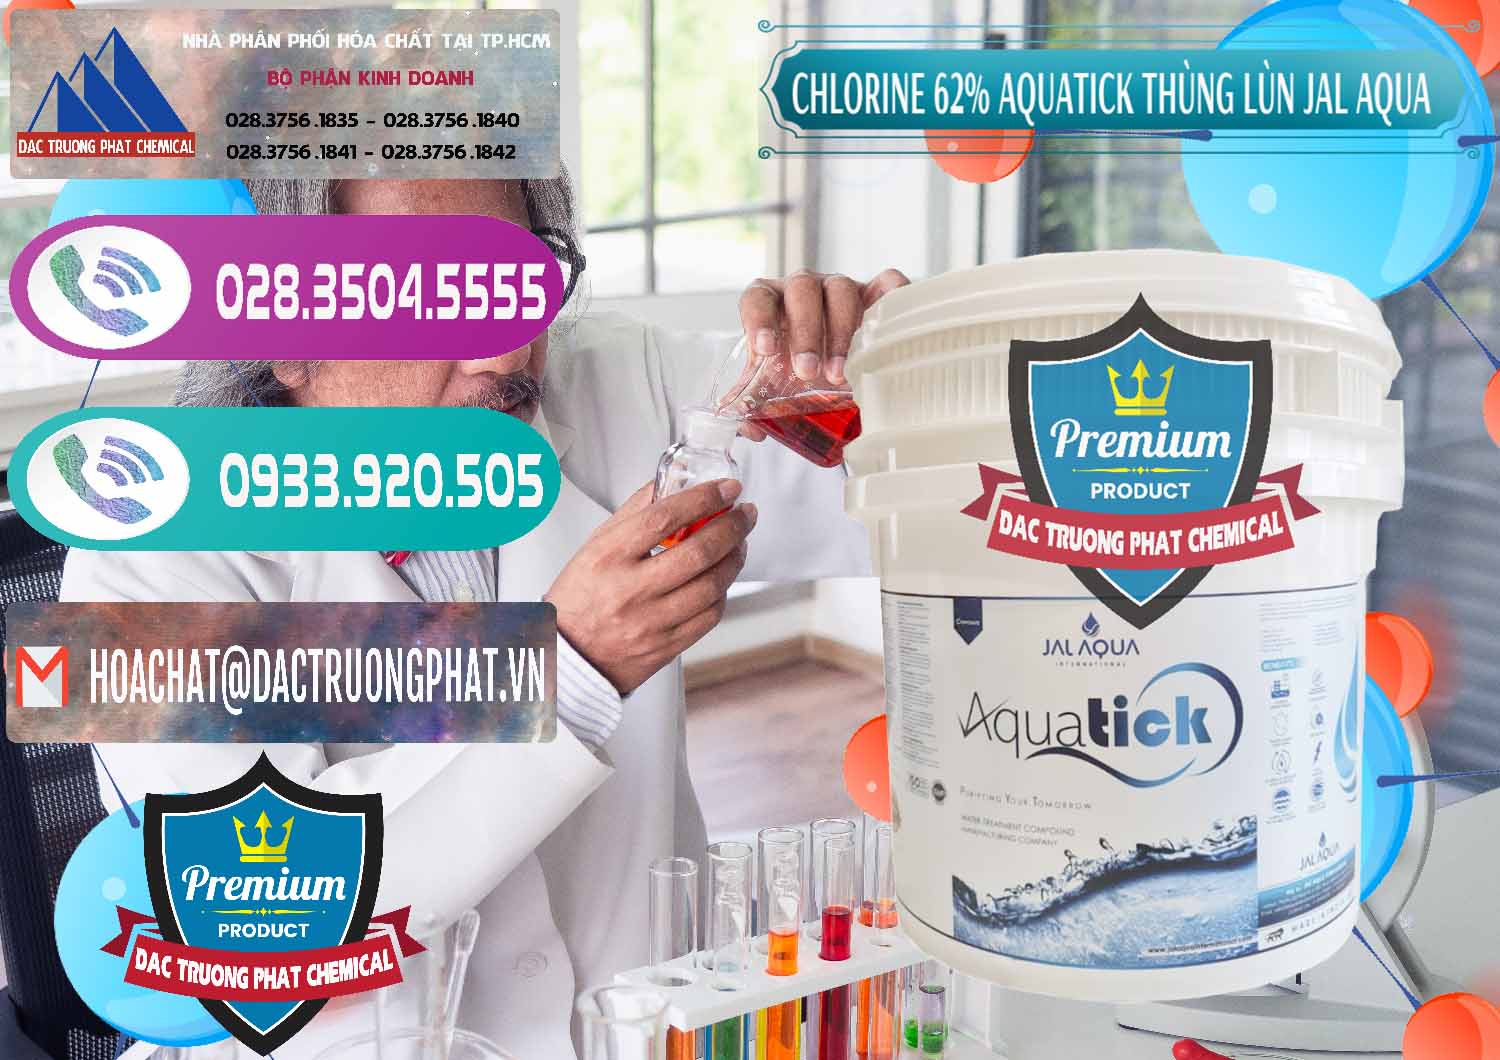 Công ty chuyên bán ( cung cấp ) Chlorine – Clorin 62% Aquatick Thùng Lùn Jal Aqua Ấn Độ India - 0238 - Công ty nhập khẩu ( phân phối ) hóa chất tại TP.HCM - hoachatxulynuoc.com